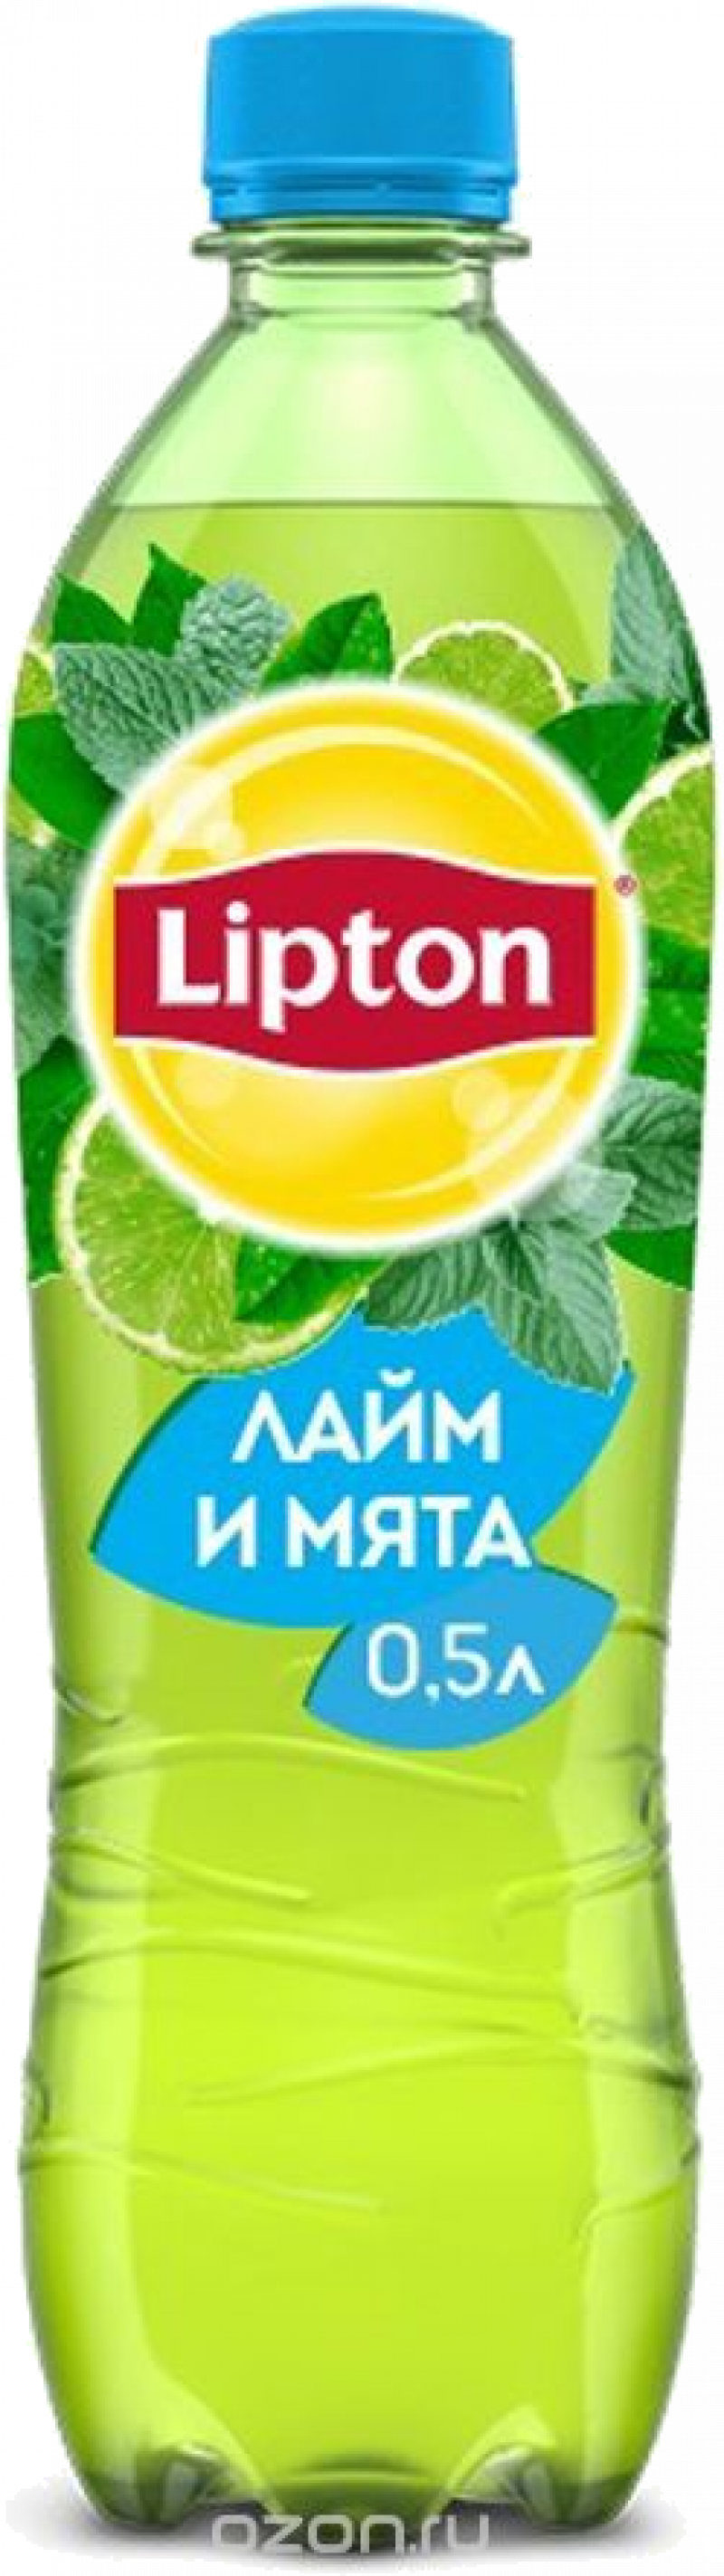 Чай ТМ Lipton Лайм Мята 0.5л